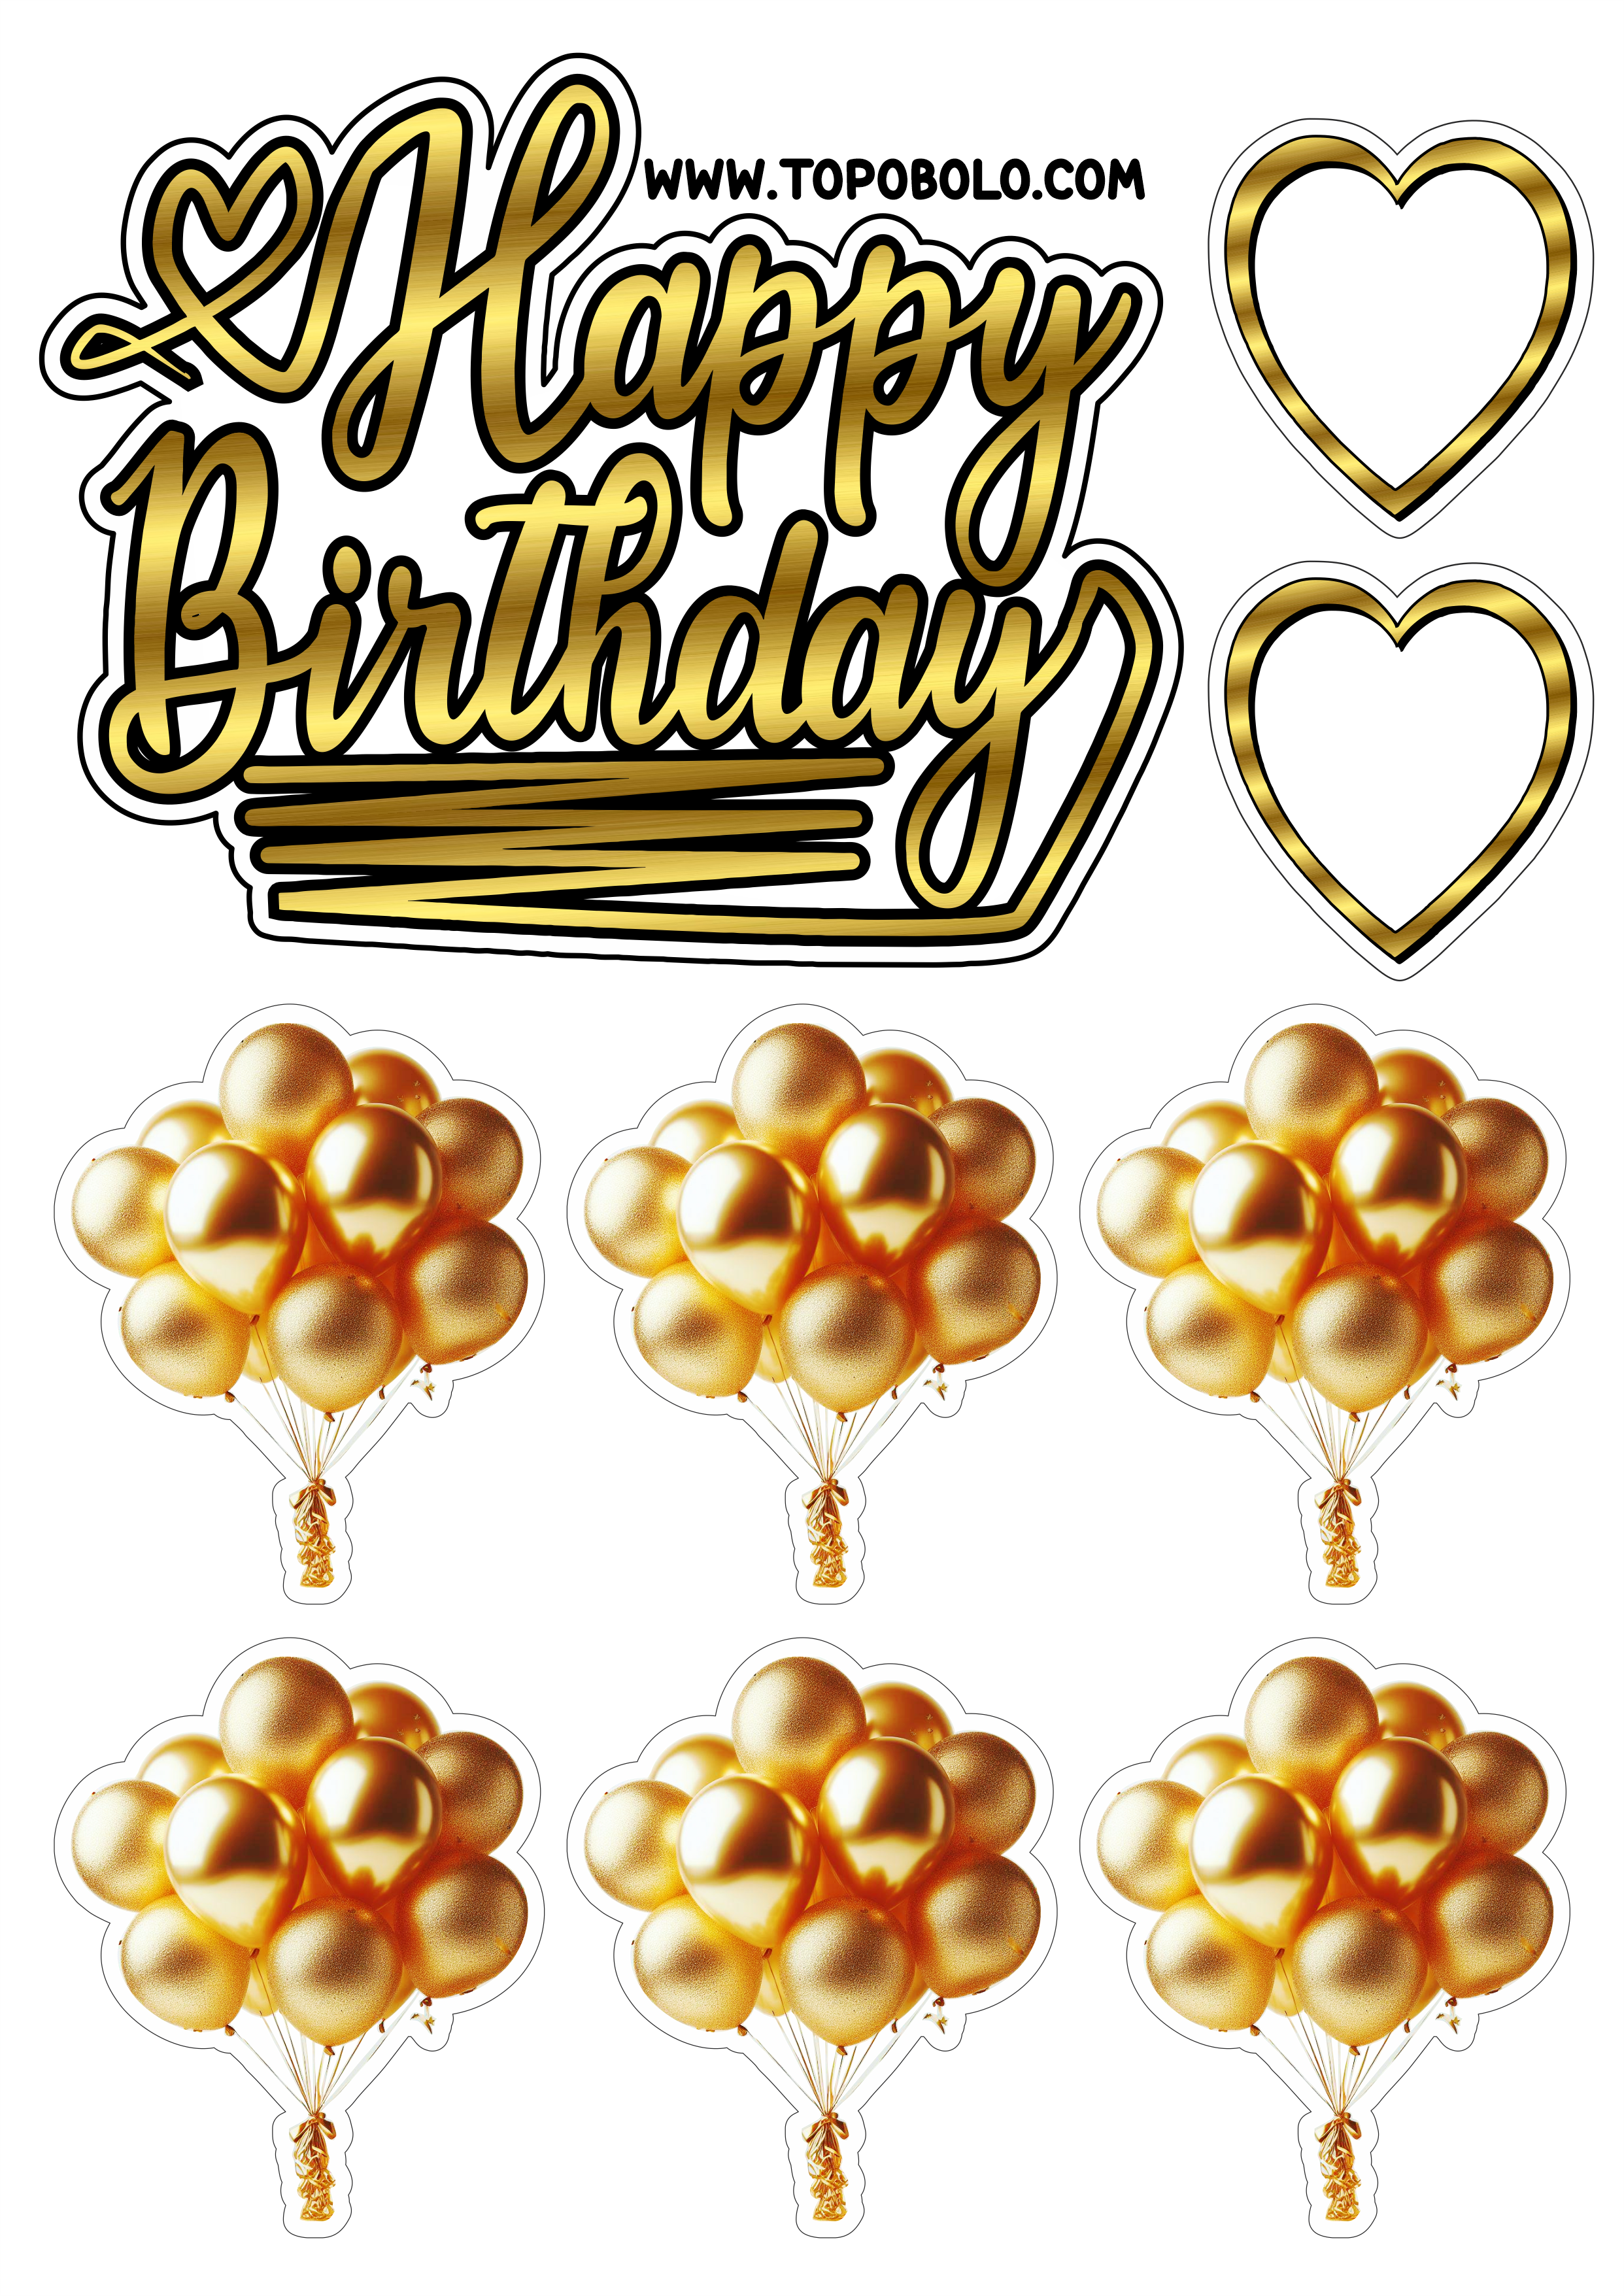 Topo de bolo para imprimir Happy Birthday aniversário dourado com corações e balões png